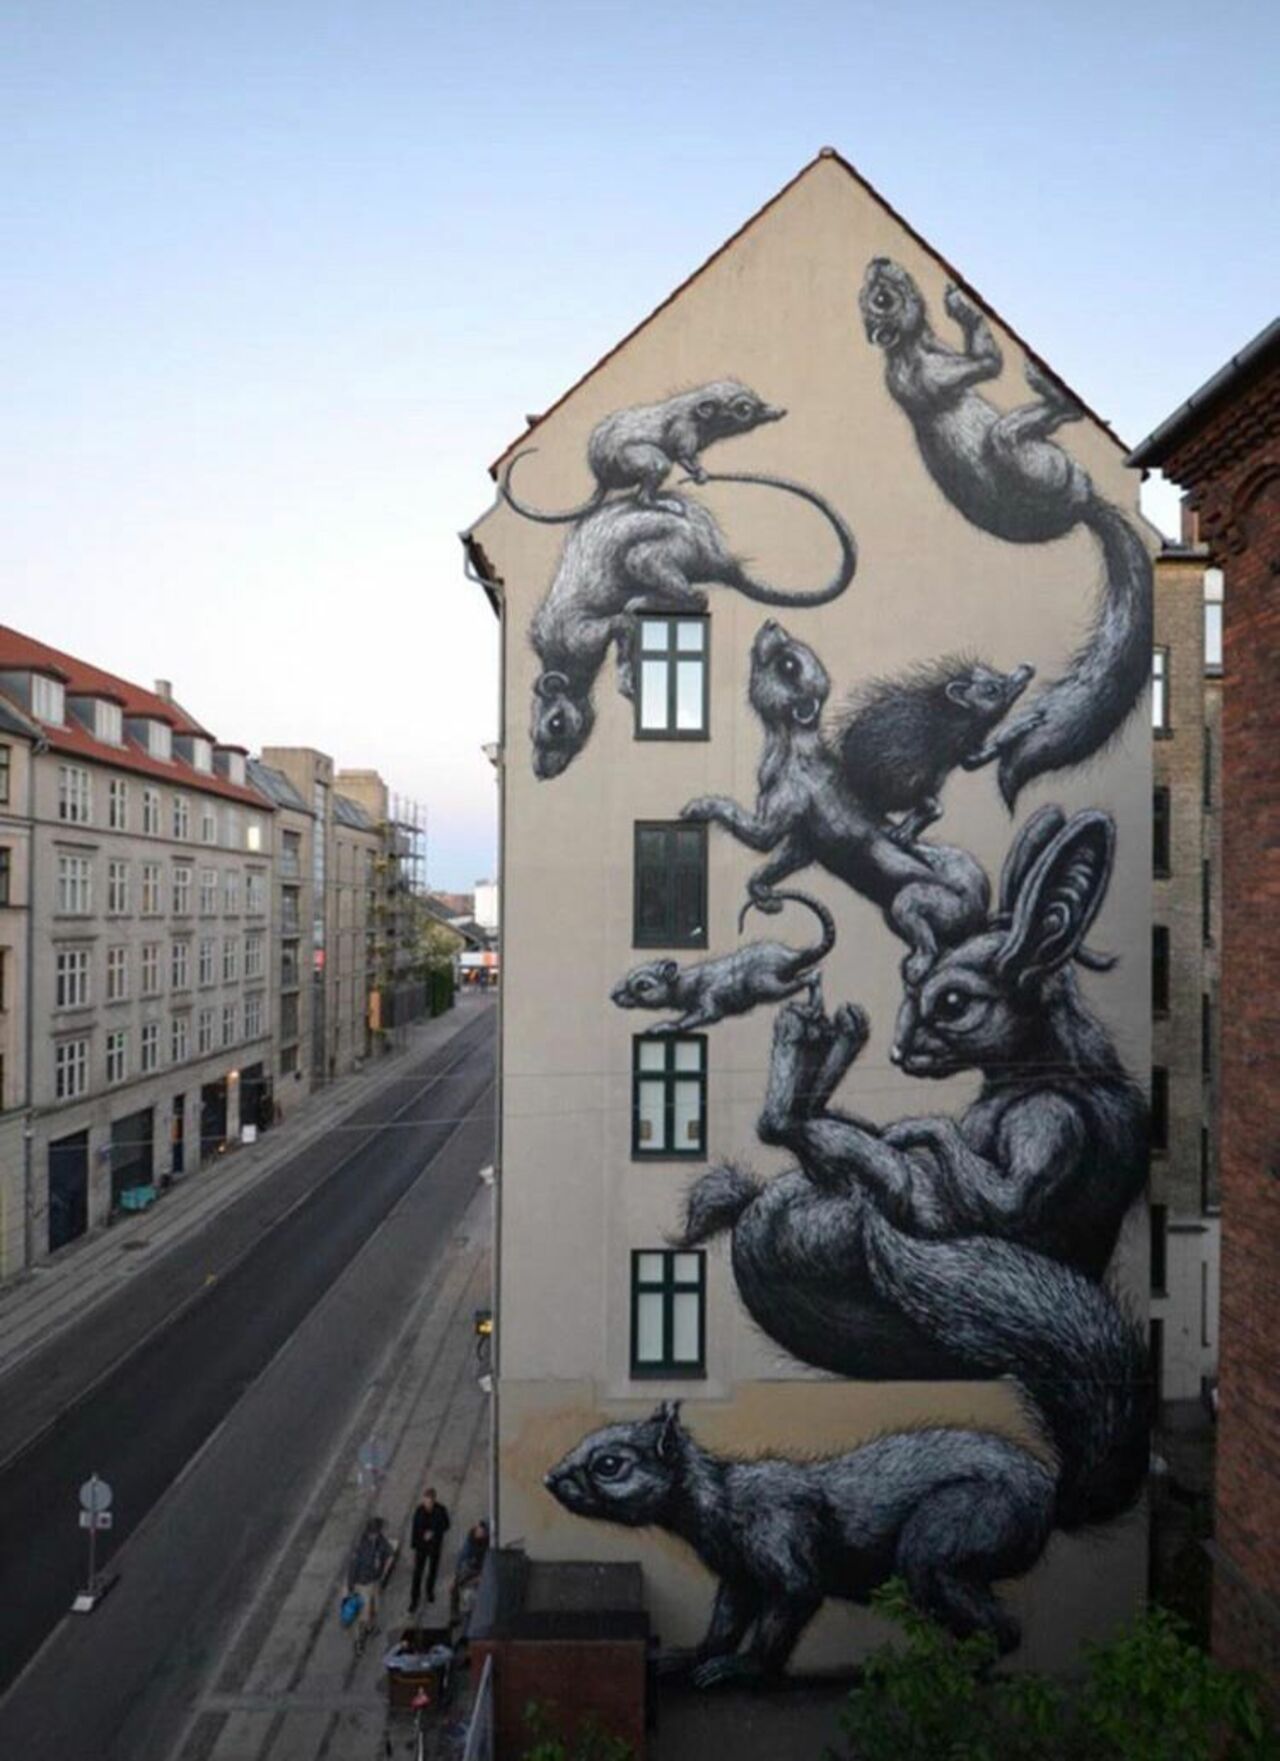 New work by ROA in Copenhagen, Denmark #streetart #mural #graffiti #art https://t.co/zn5C9sXOki